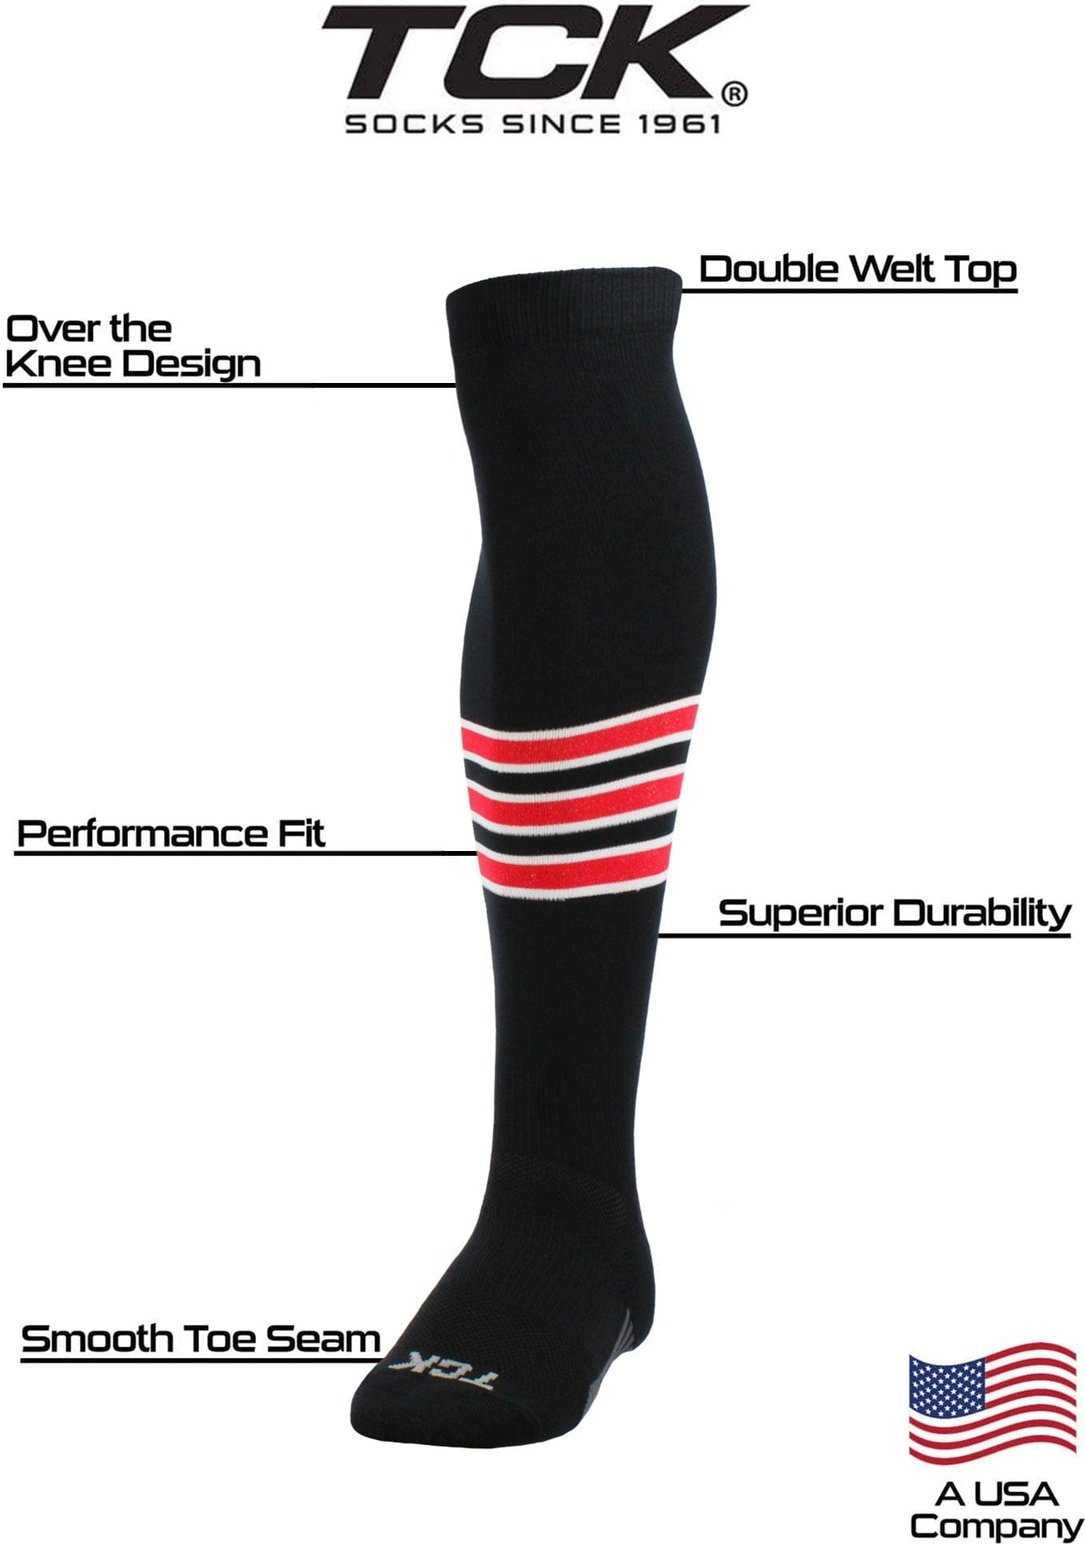 TCK Dugout Striped Over the Knee Baseball Socks - Black White Scarlet